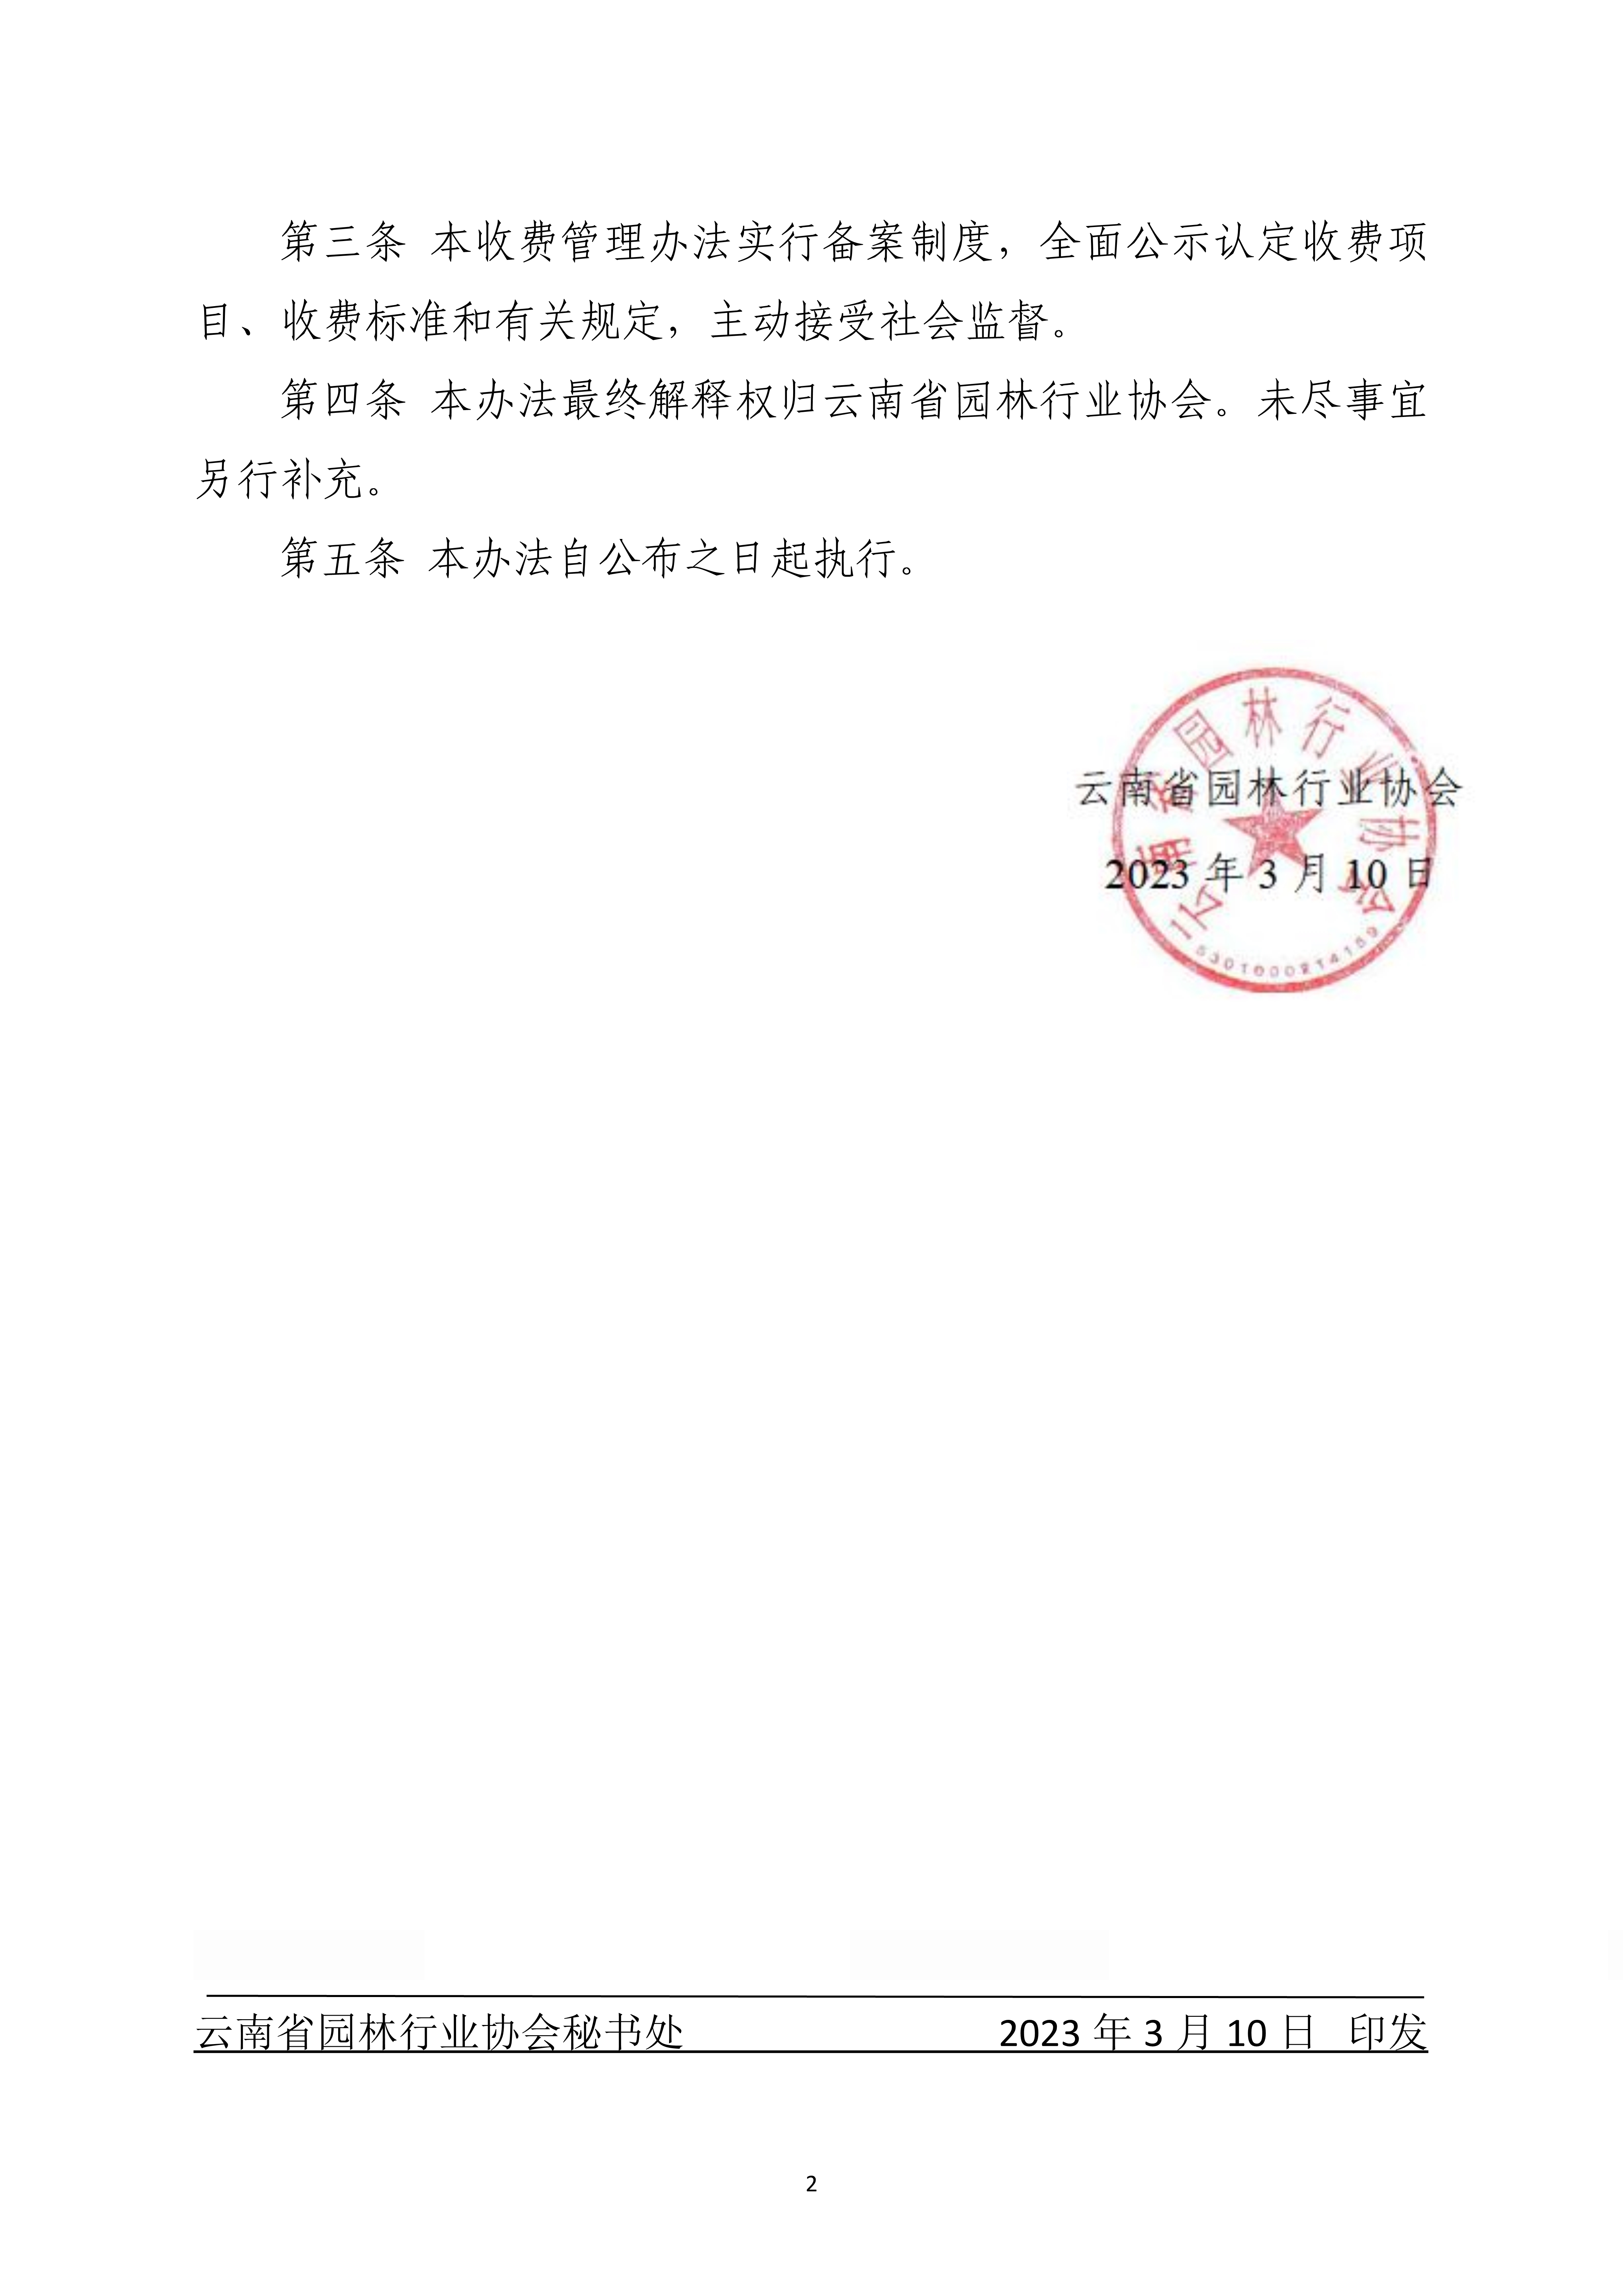 4云南省园林行业协会职业技能等级认定收费管理办法（暂行）_2.jpg